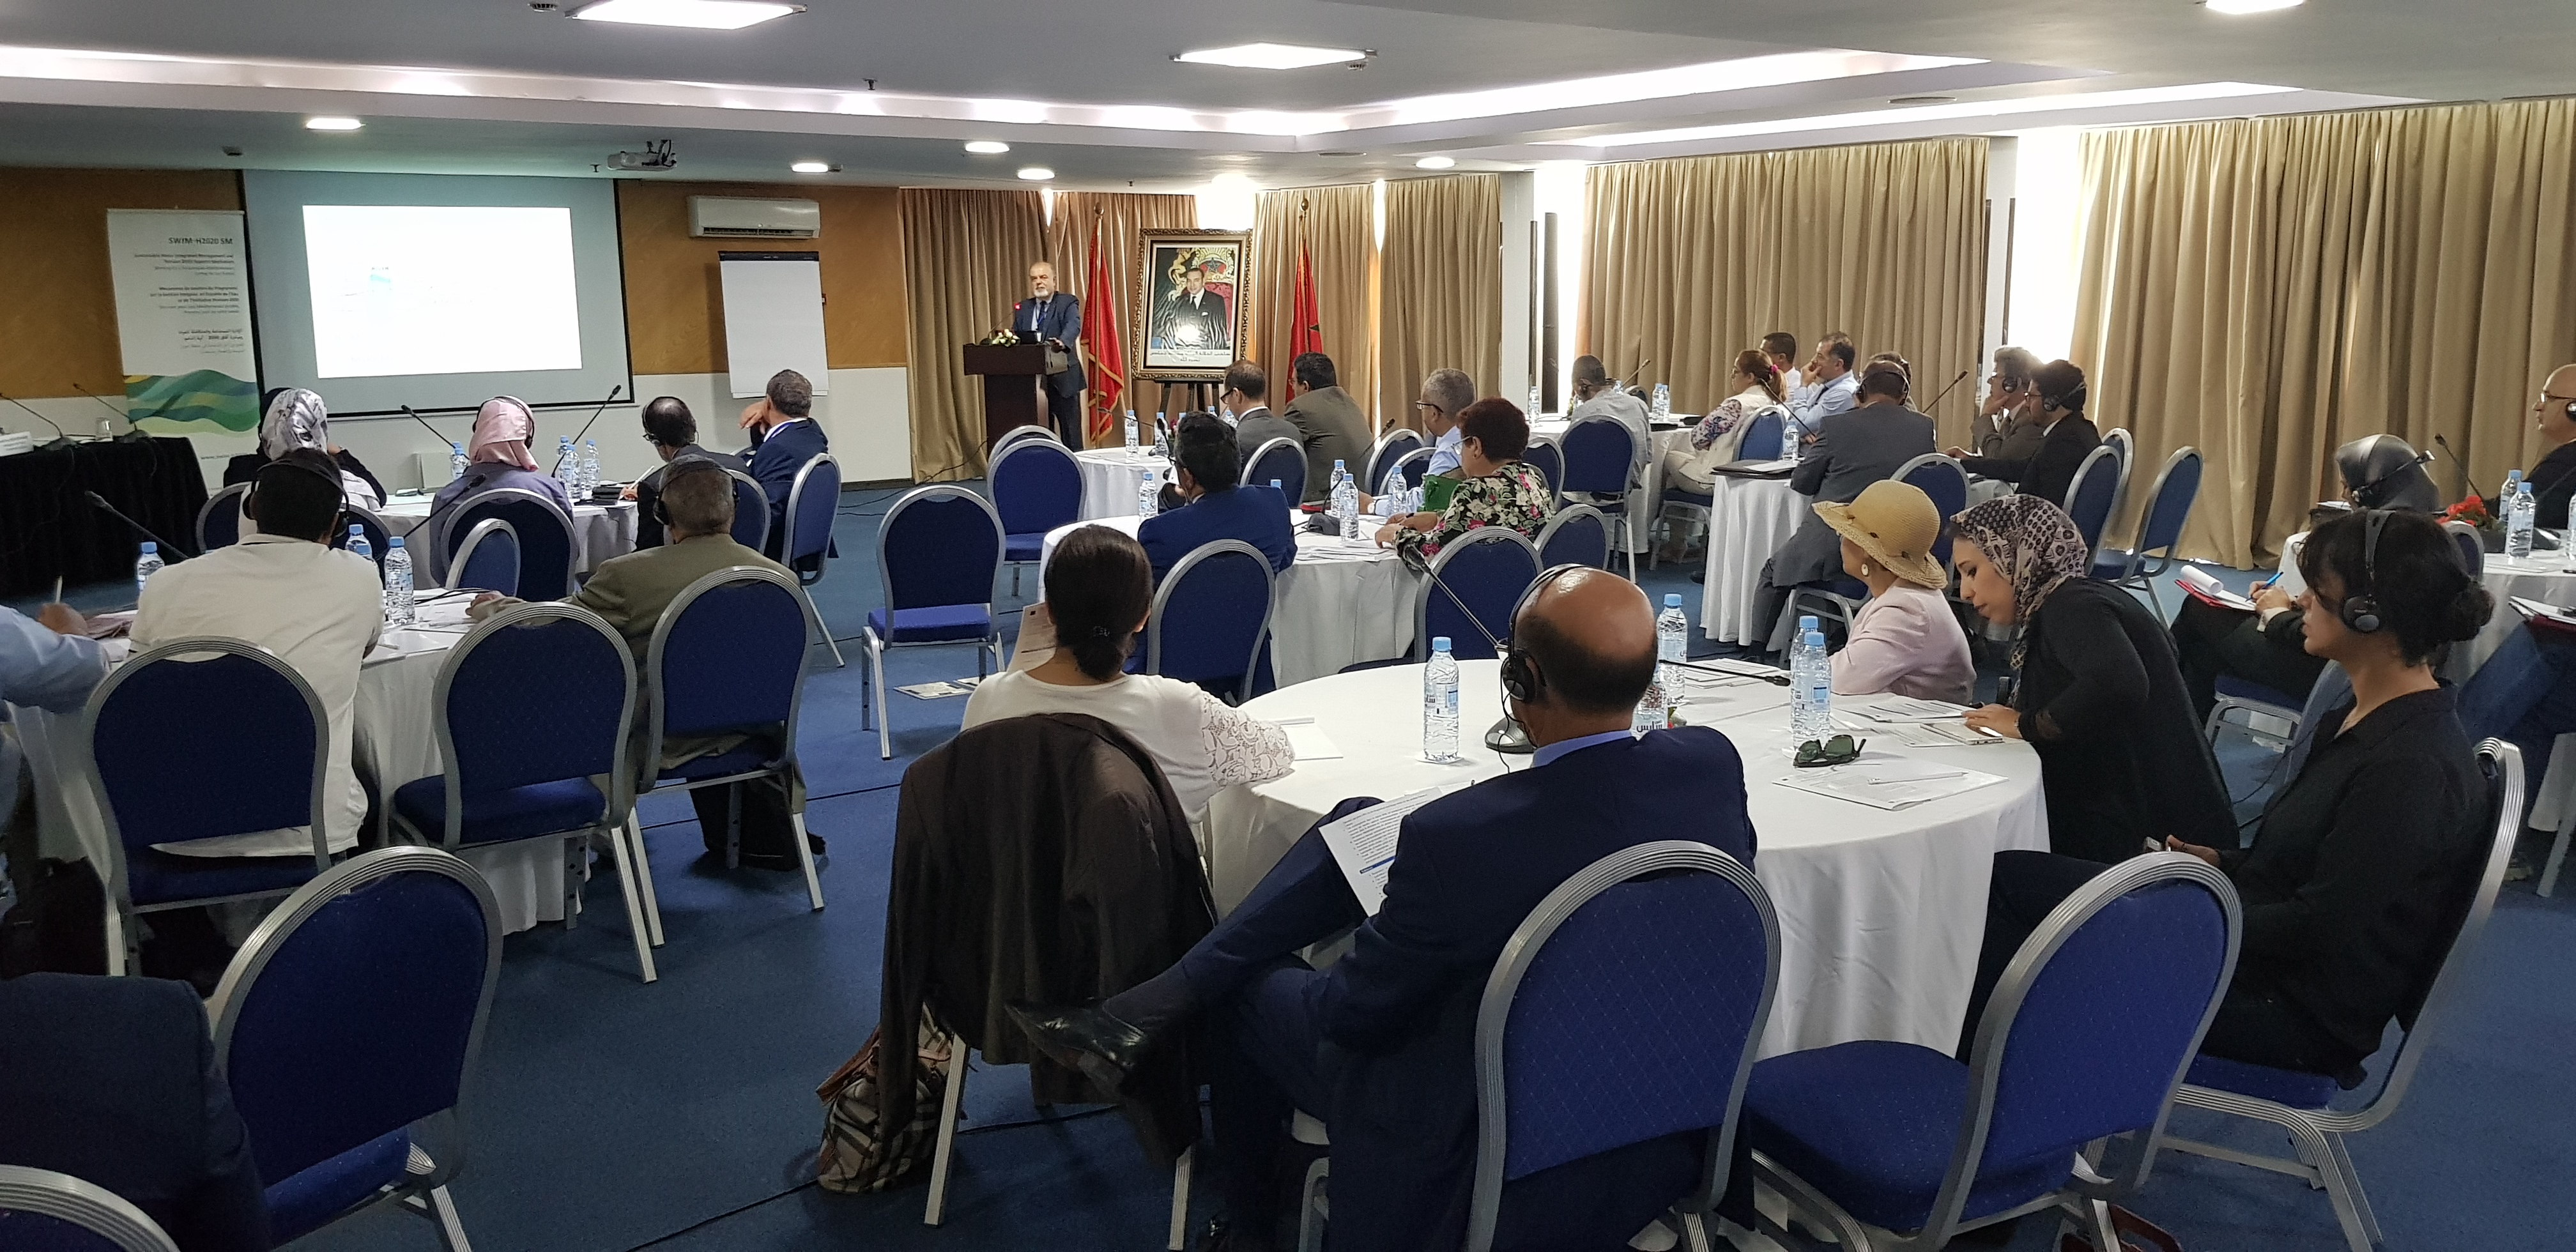 17-18 سبتمبر 2018، الرباط، المغرب – جلسة تشاور لآلية الدعم لمشروع الإدراة المستدامة والمتكاملة للمياه ومشروع آفاق 2020 حول التشخيص الساحلي للمنطقة وصياغة رؤية وخطة عمل لإدارة المناطق الساحلية بشكل متكامل